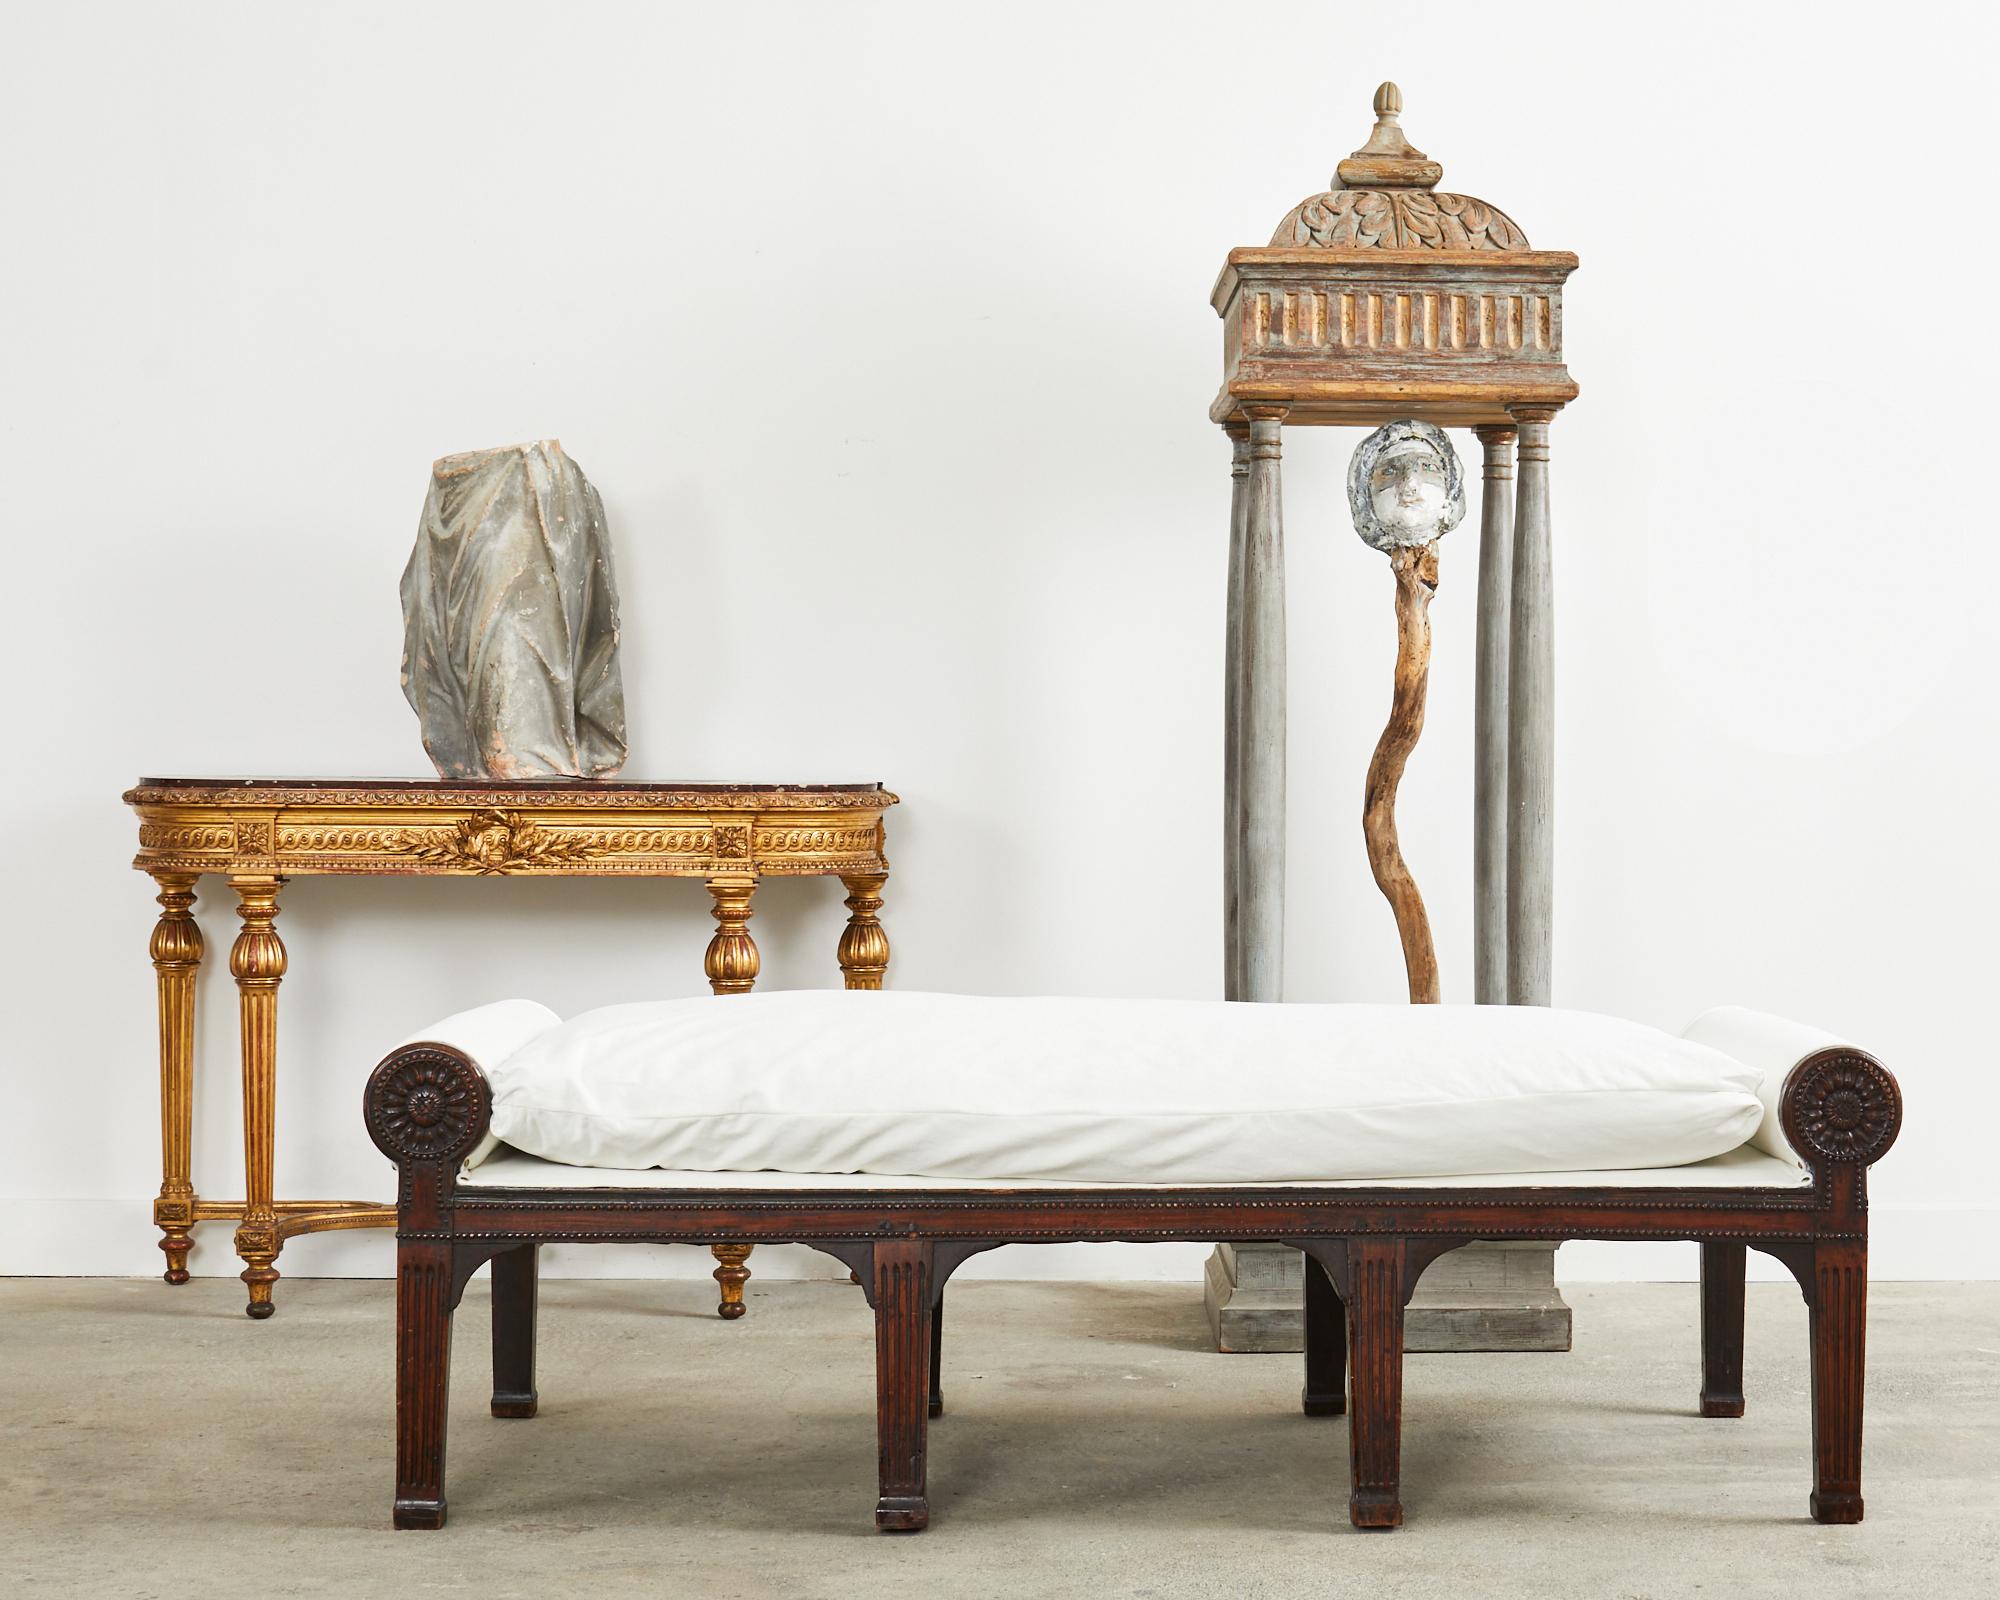 Auffälliges Tagesbett oder Sitzbank aus Nussbaumholz aus dem 19. Jahrhundert, hergestellt in der großen französischen Periode Napoleon III. Das Gestell aus Nussbaumholz hat große runde gepolsterte Bolsters an beiden Enden, die mit stilisierten